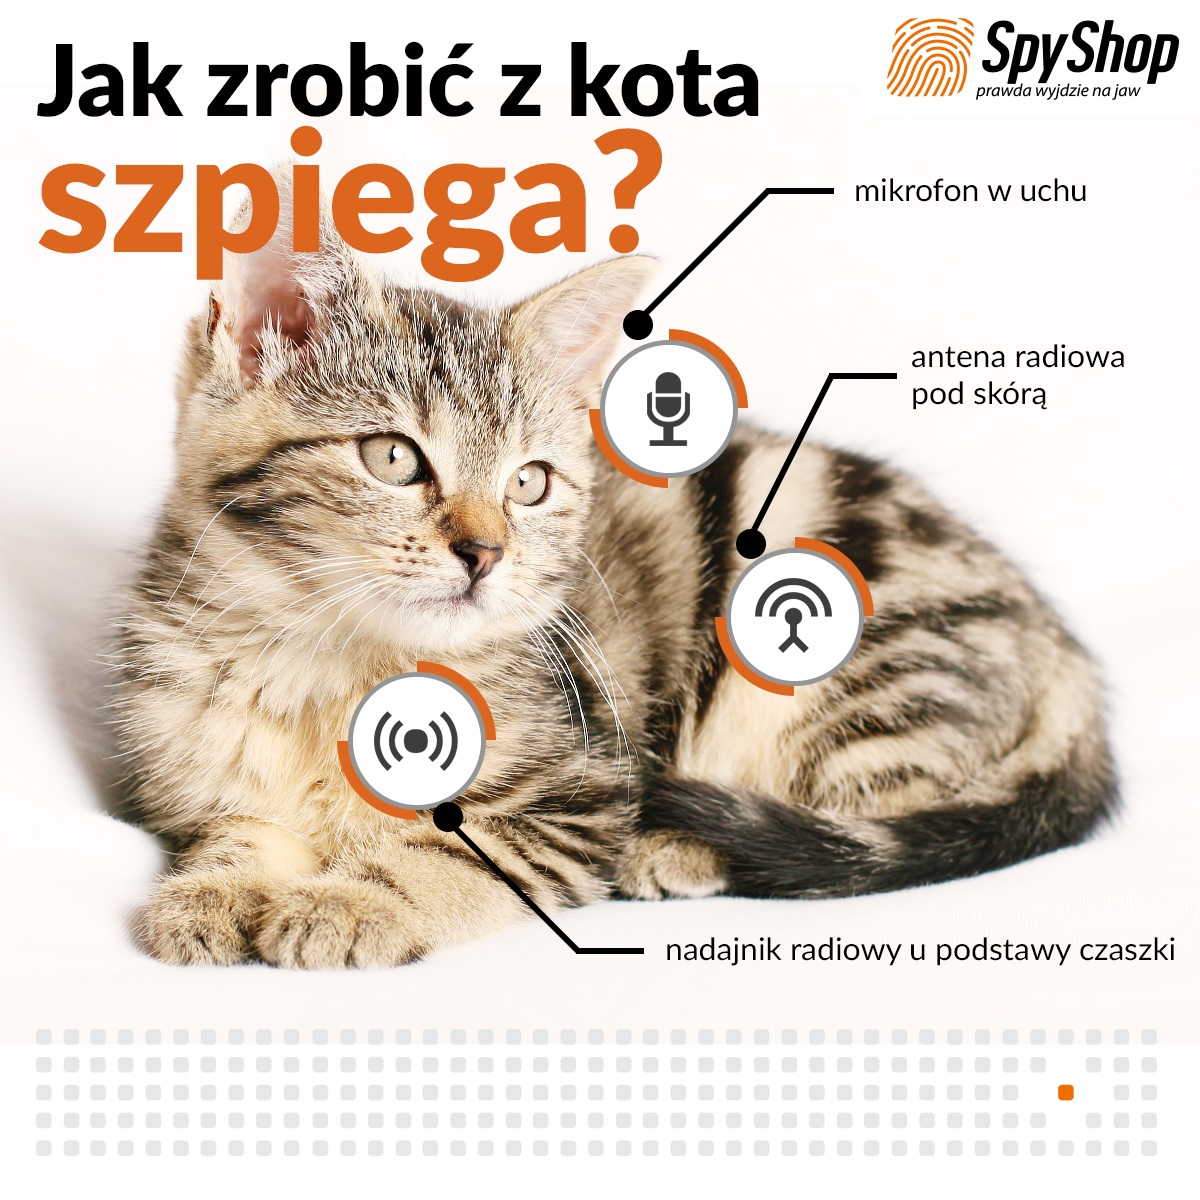 Szpiegowski kot - jak zrobić z kota podsłuch?